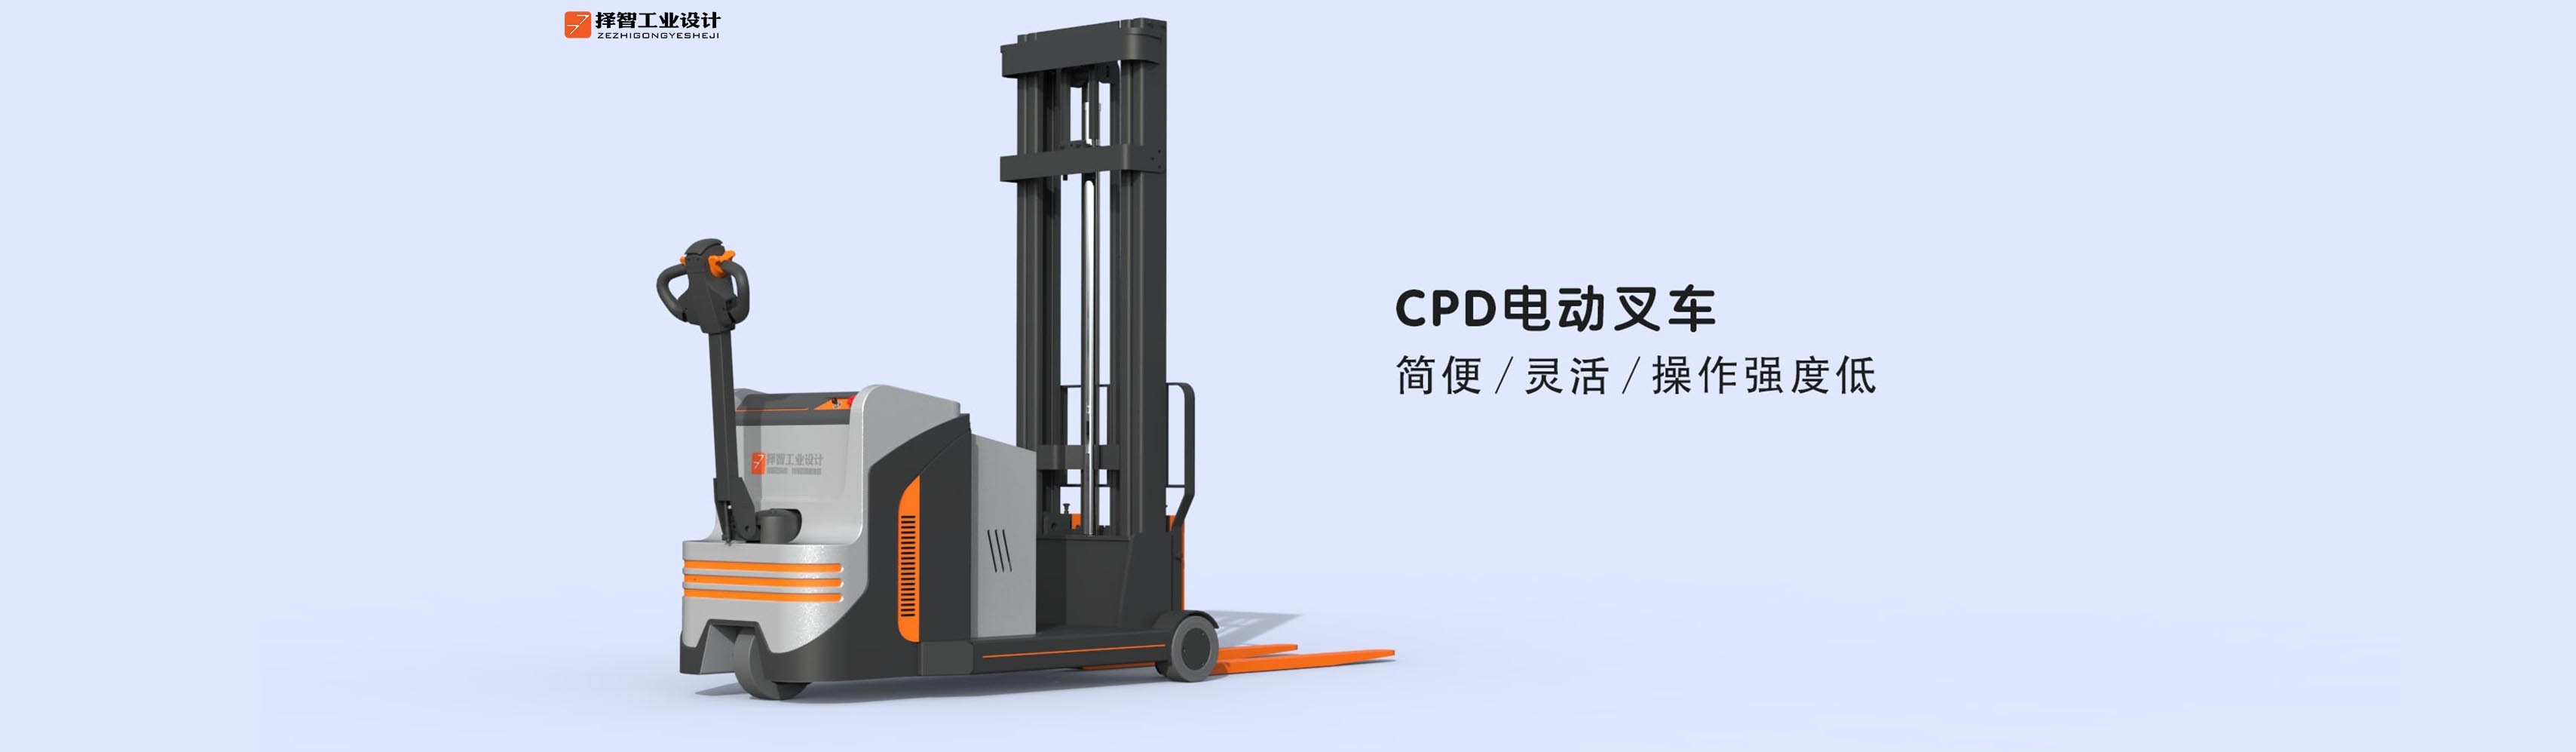 上海苏州产品设计工业产品外观设计结构设计CPD电动叉车